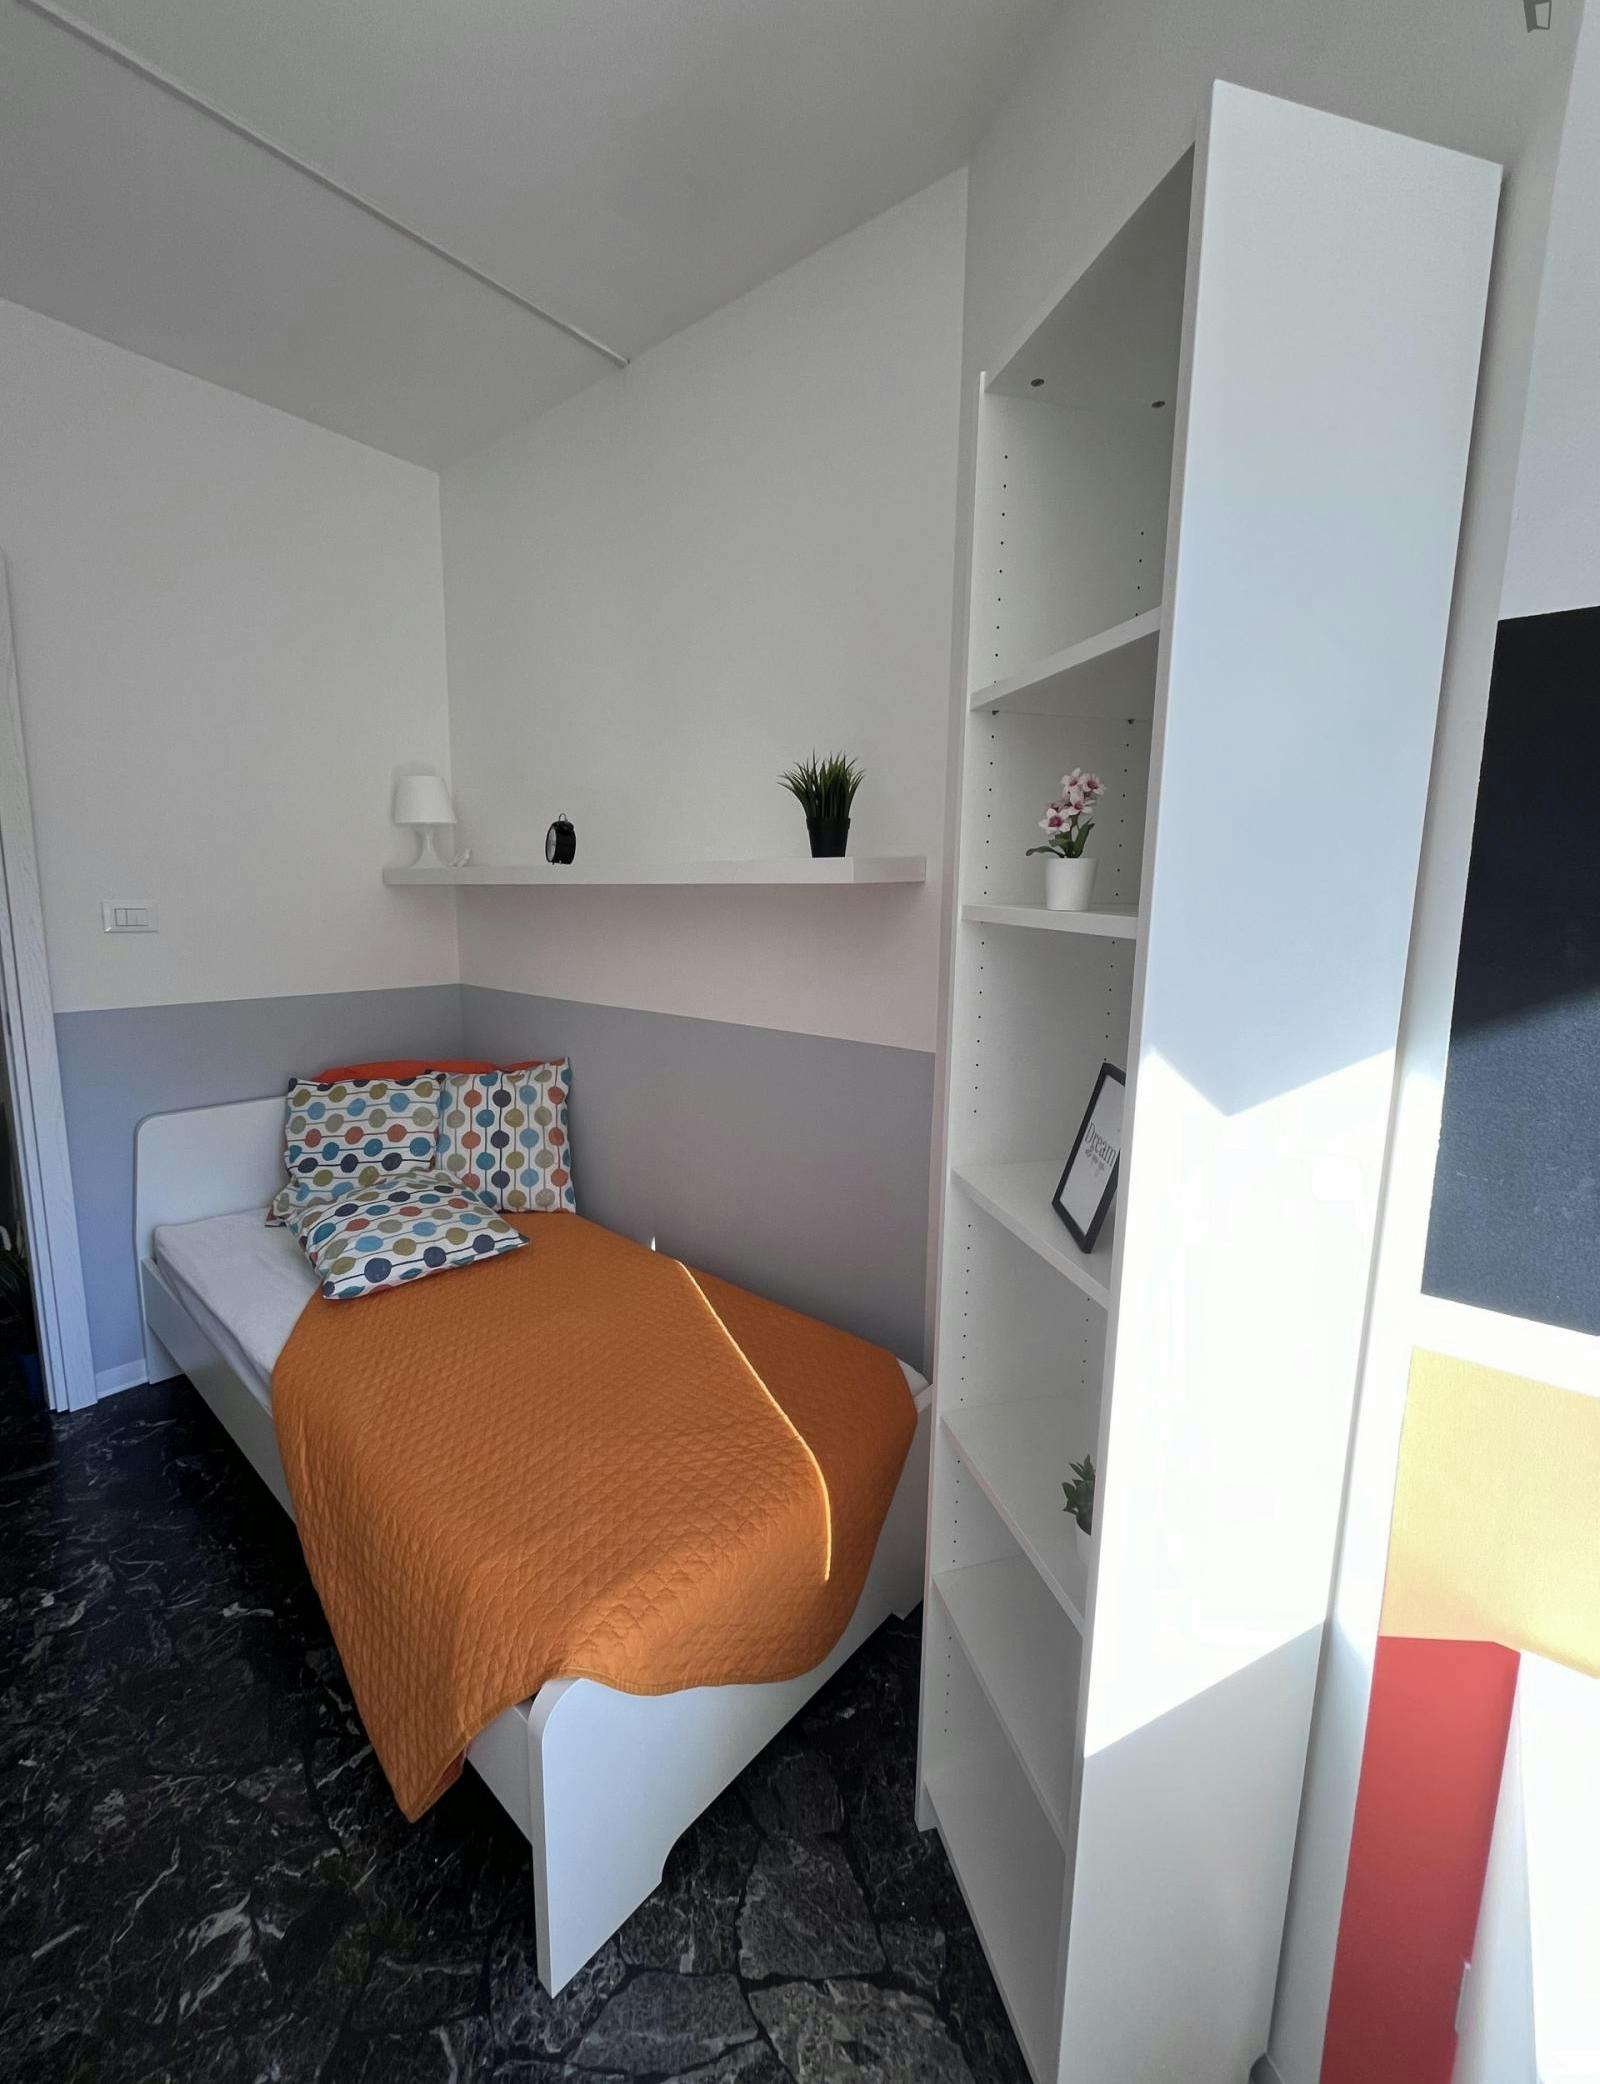 Airy single bedroom with a balcony, near the Santa Chiara train station